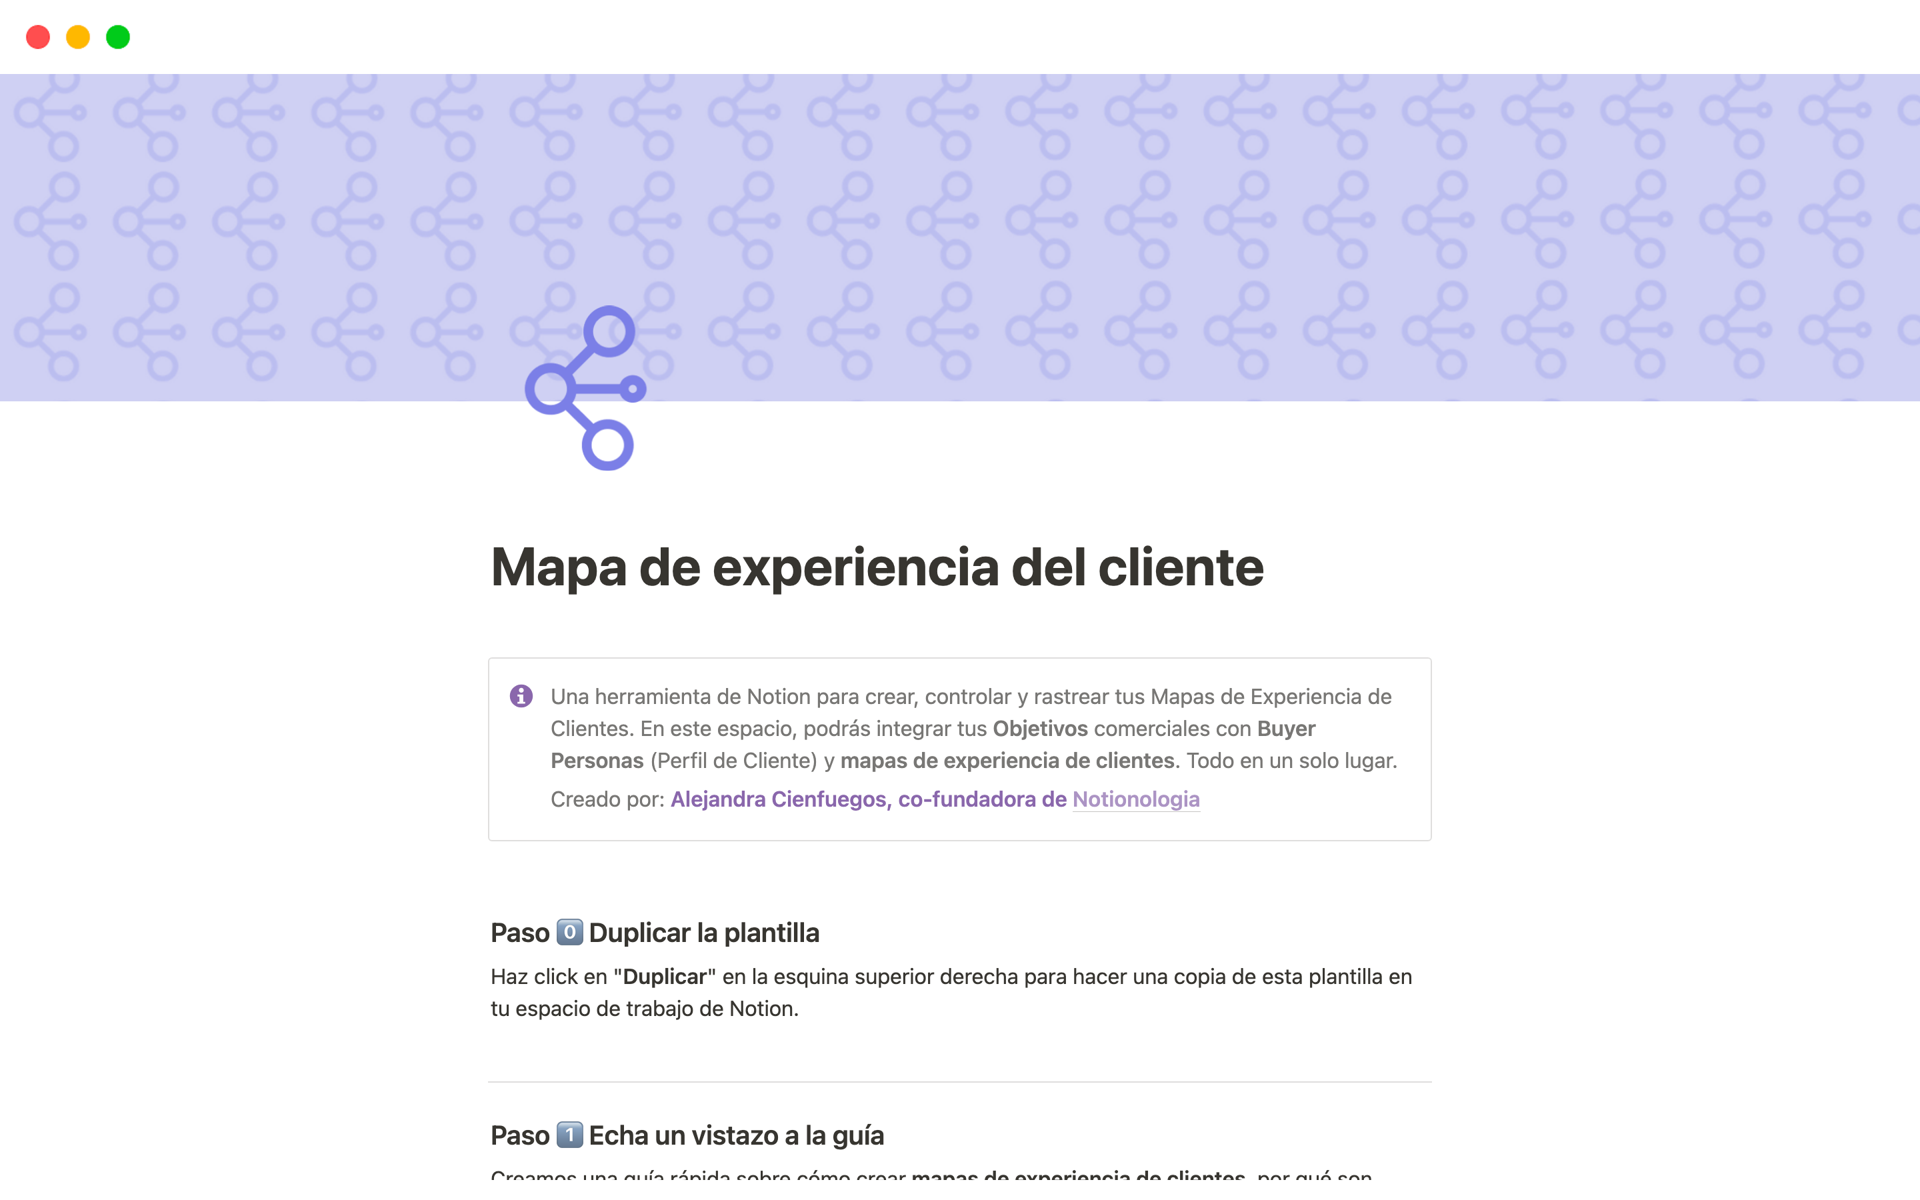 Una herramienta de Notion para crear, controlar y rastrear tus Mapas de Experiencia de Clientes. 